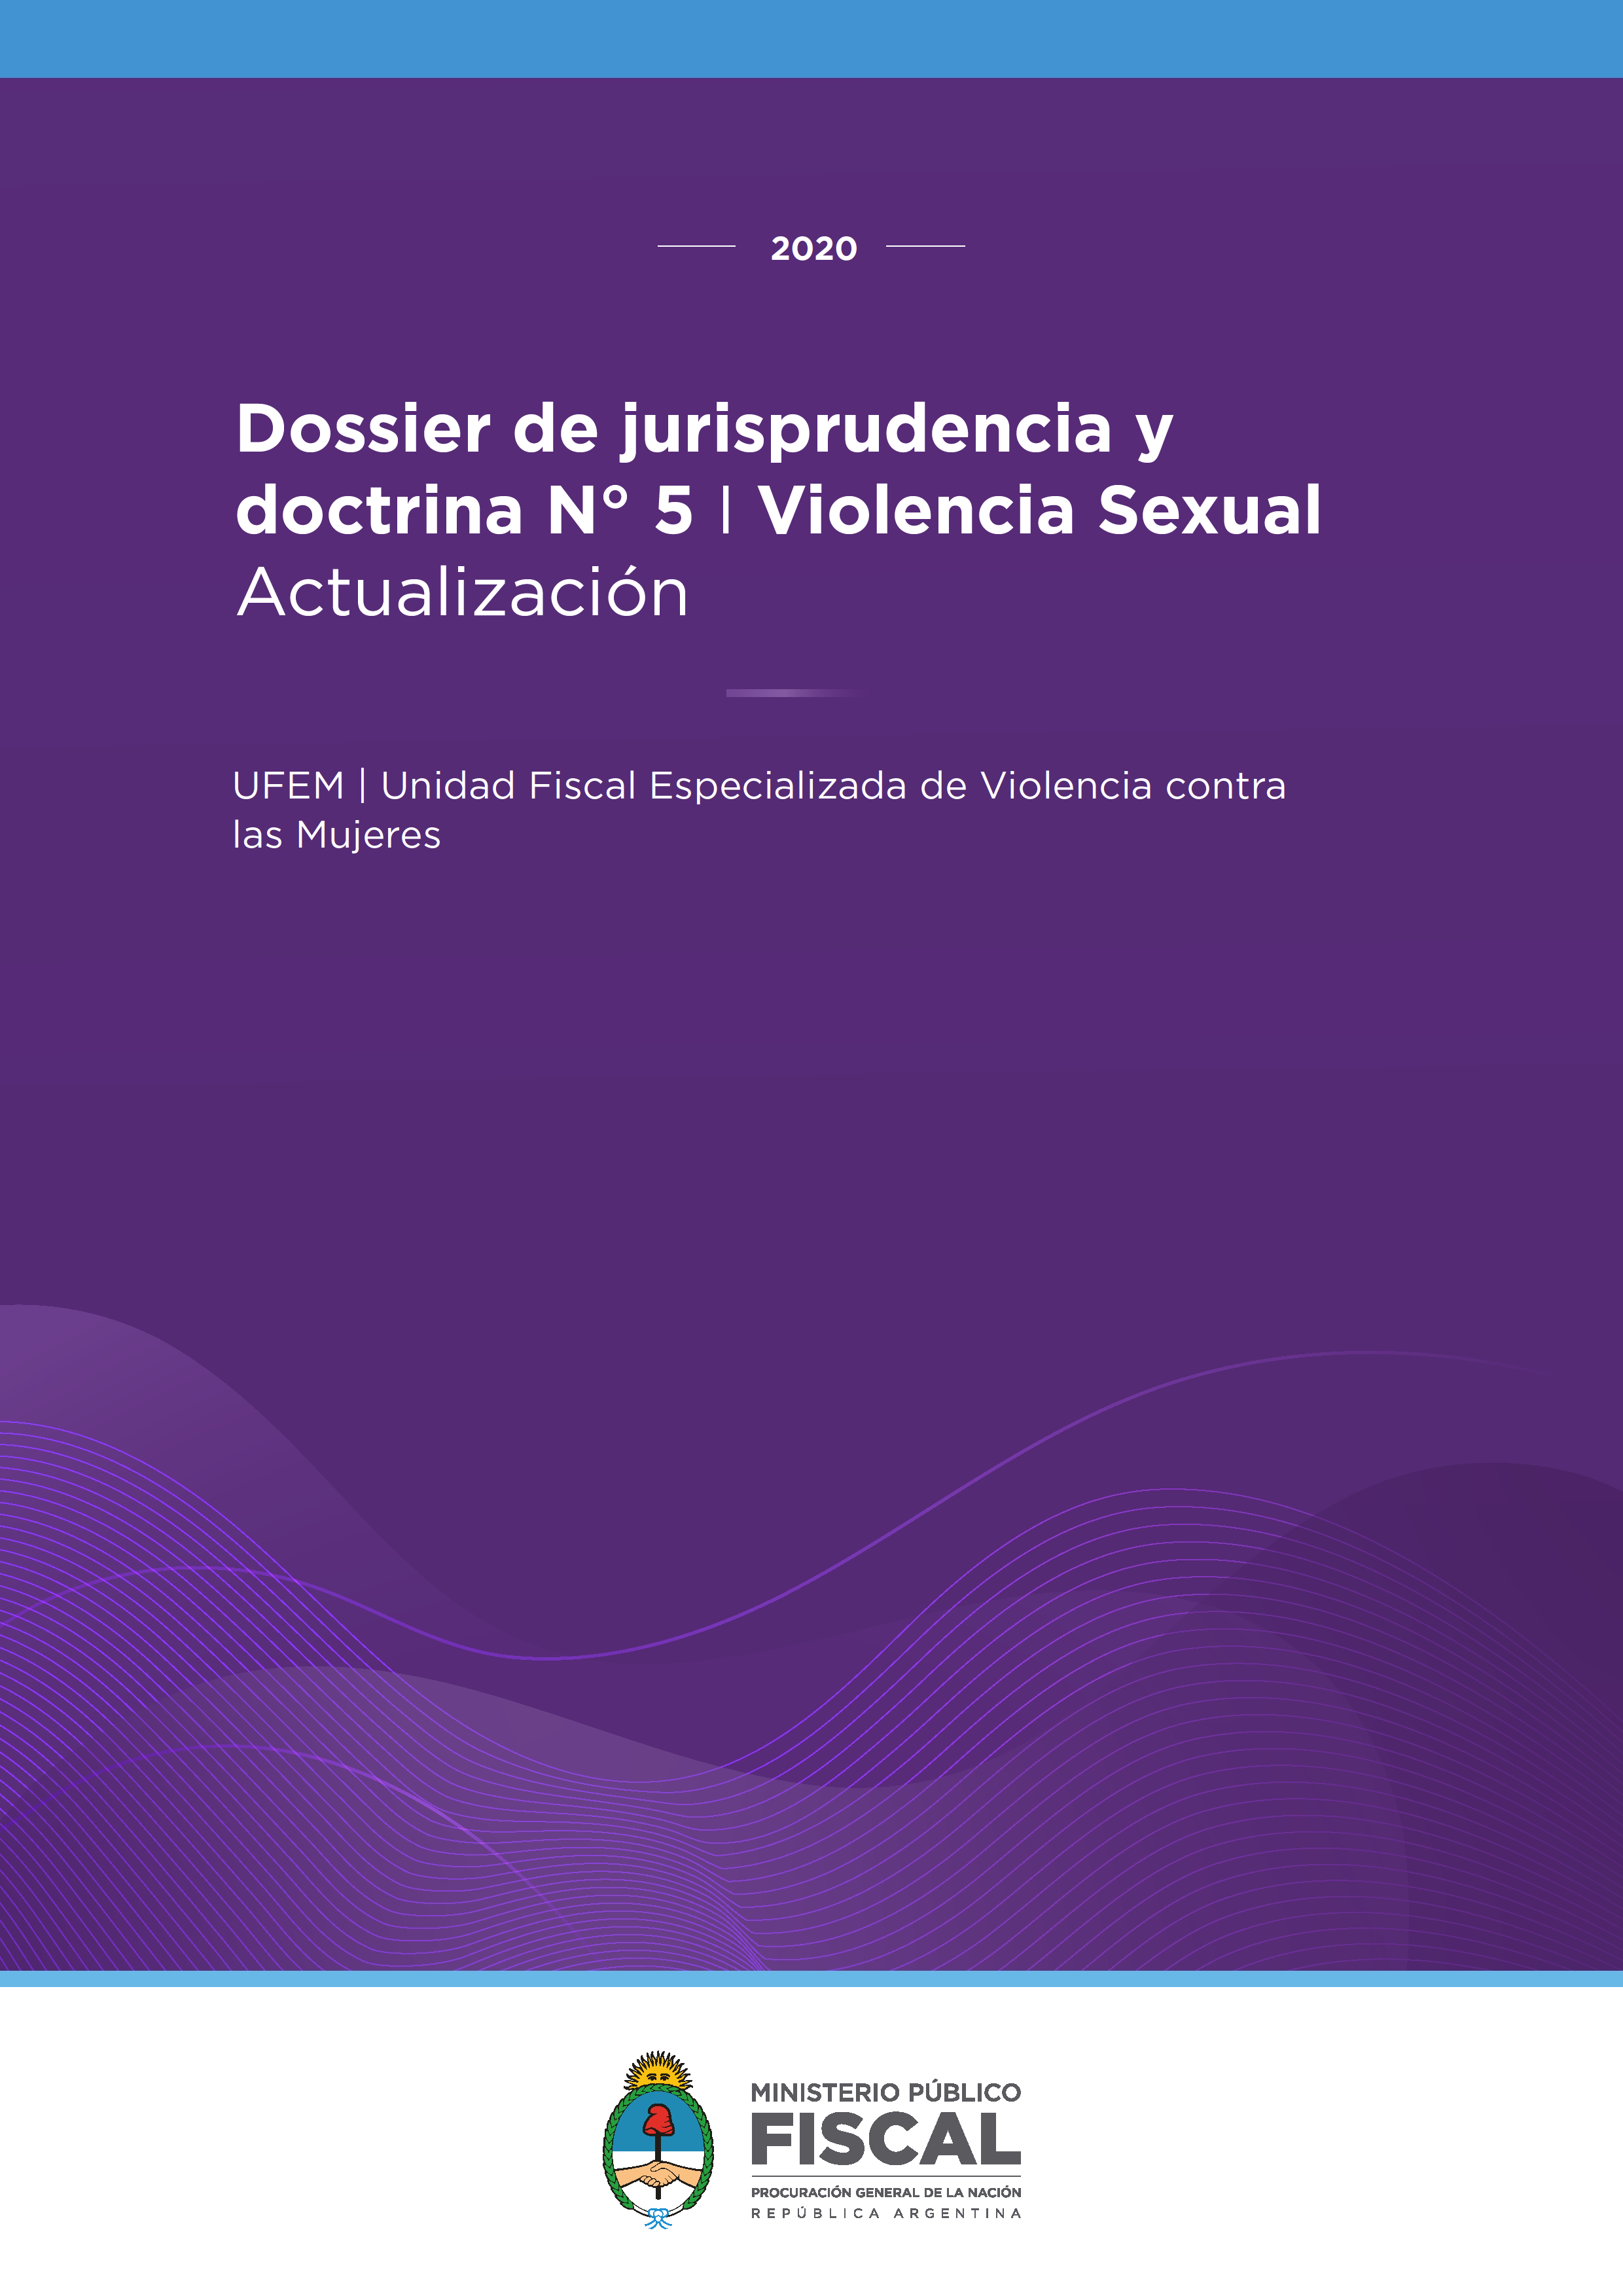 Dossier de jurisprudencia y doctrina N° 5: Violencia Sexual (Actualización)